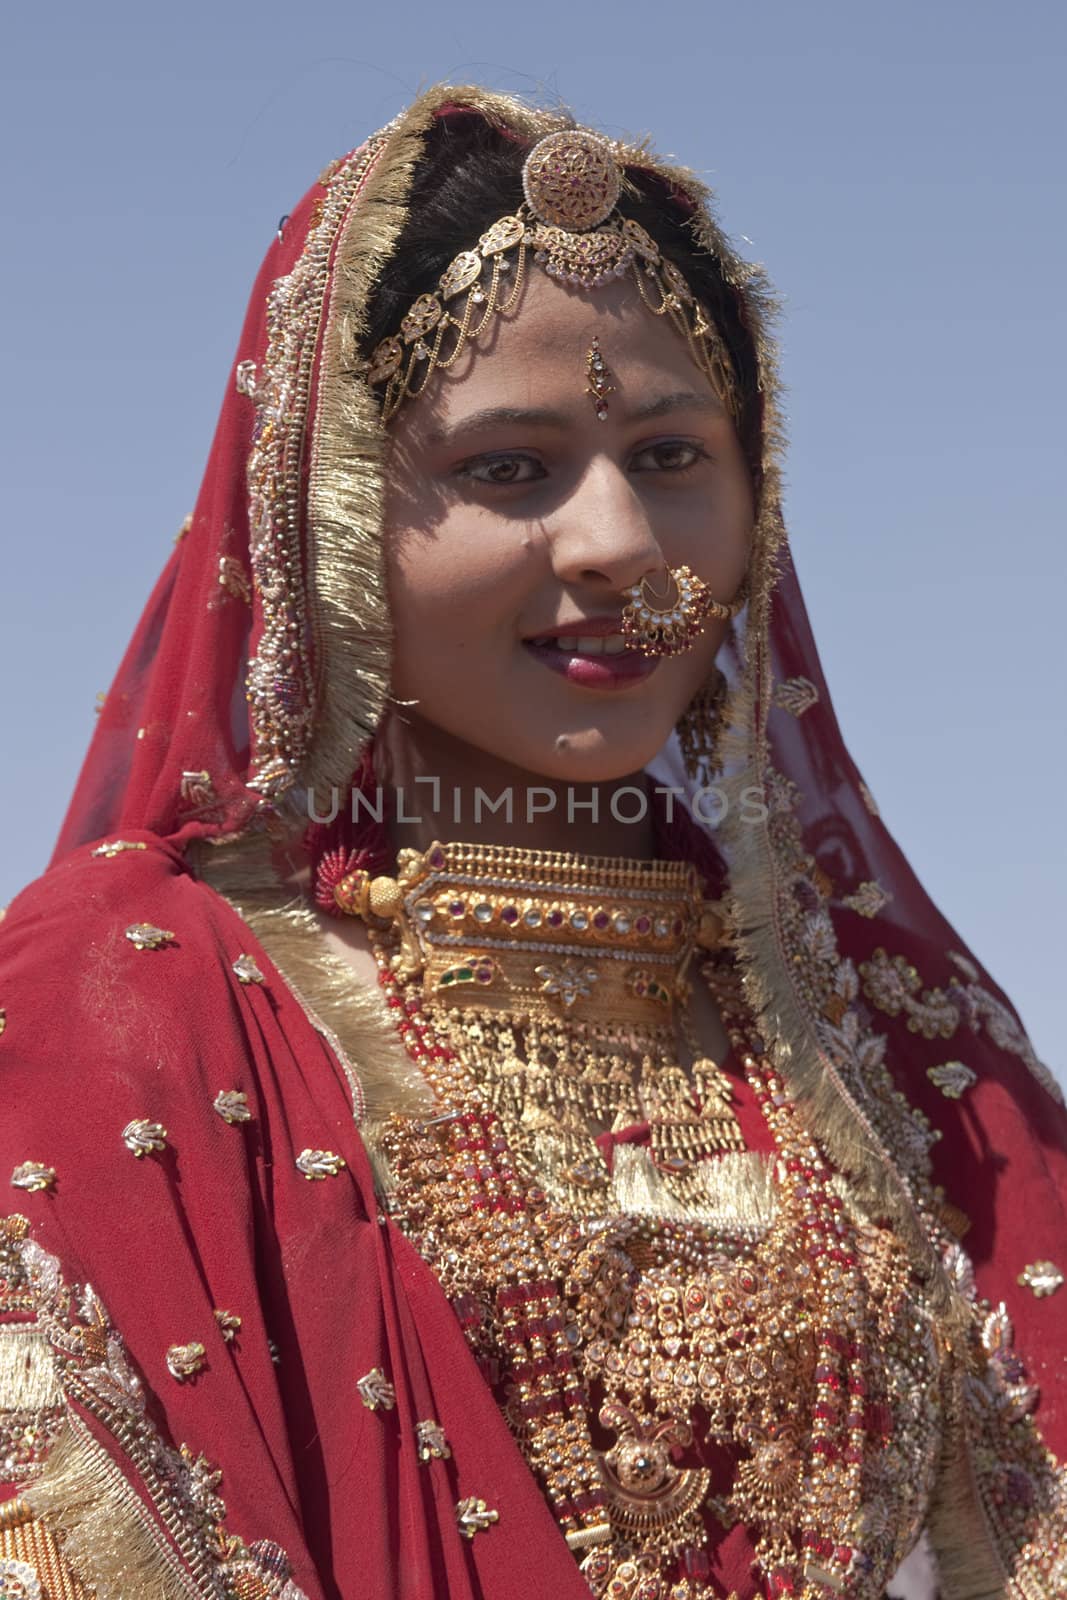 Indian bride by JeremyRichards